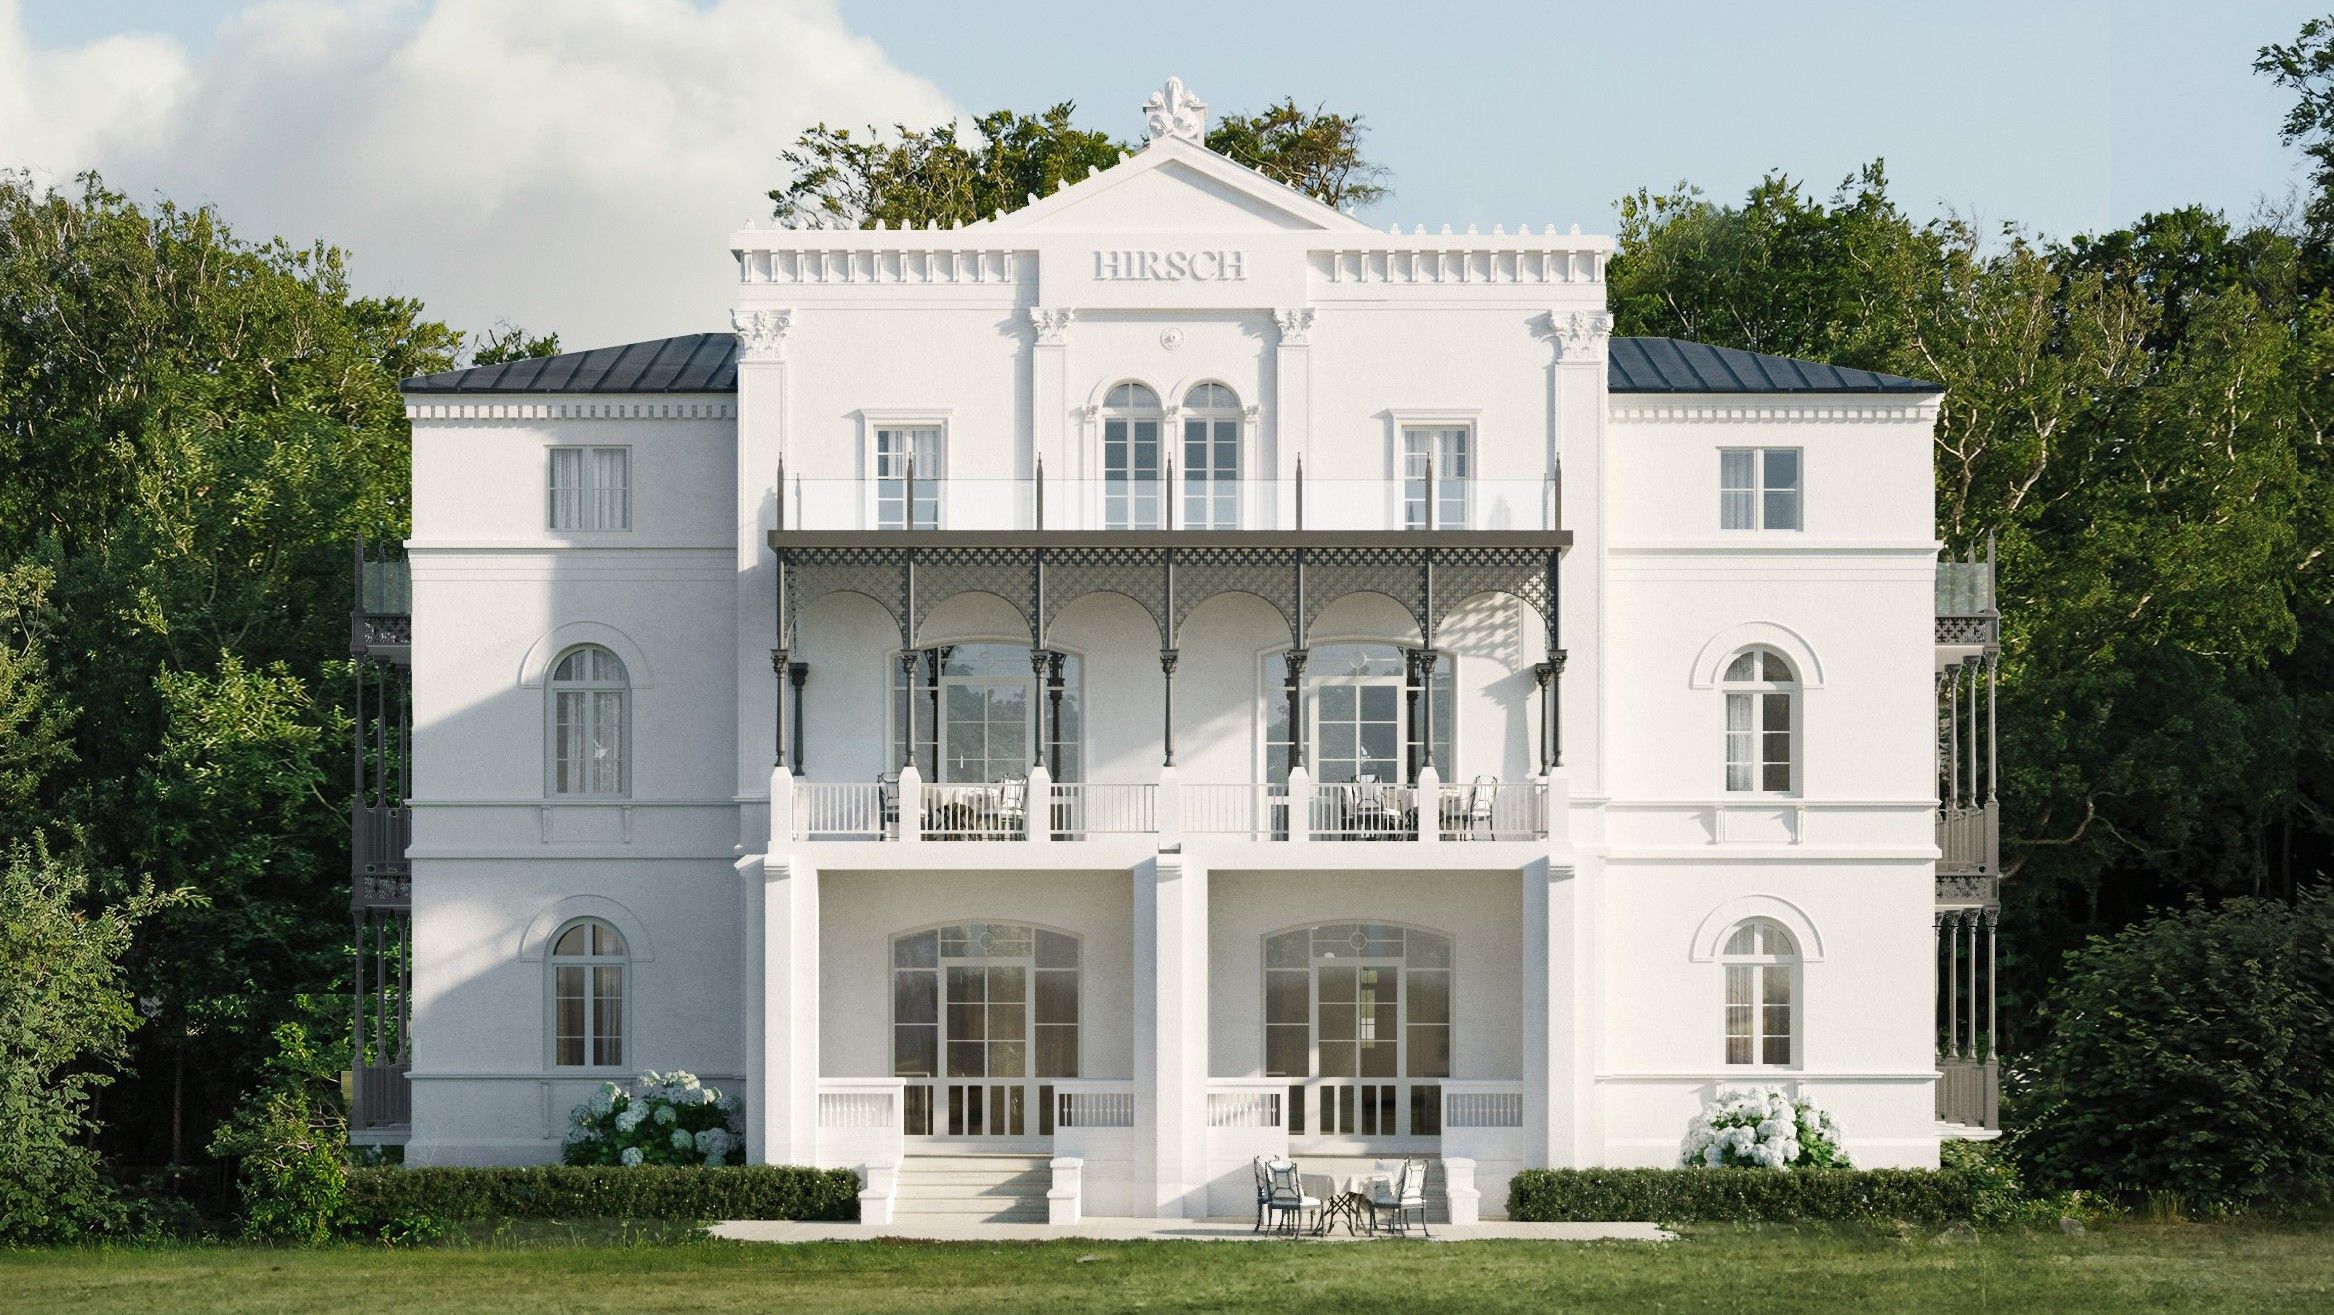 Fotos Villa Hirsch im Ostseebad Heiligendamm, 1. Reihe Ostsee